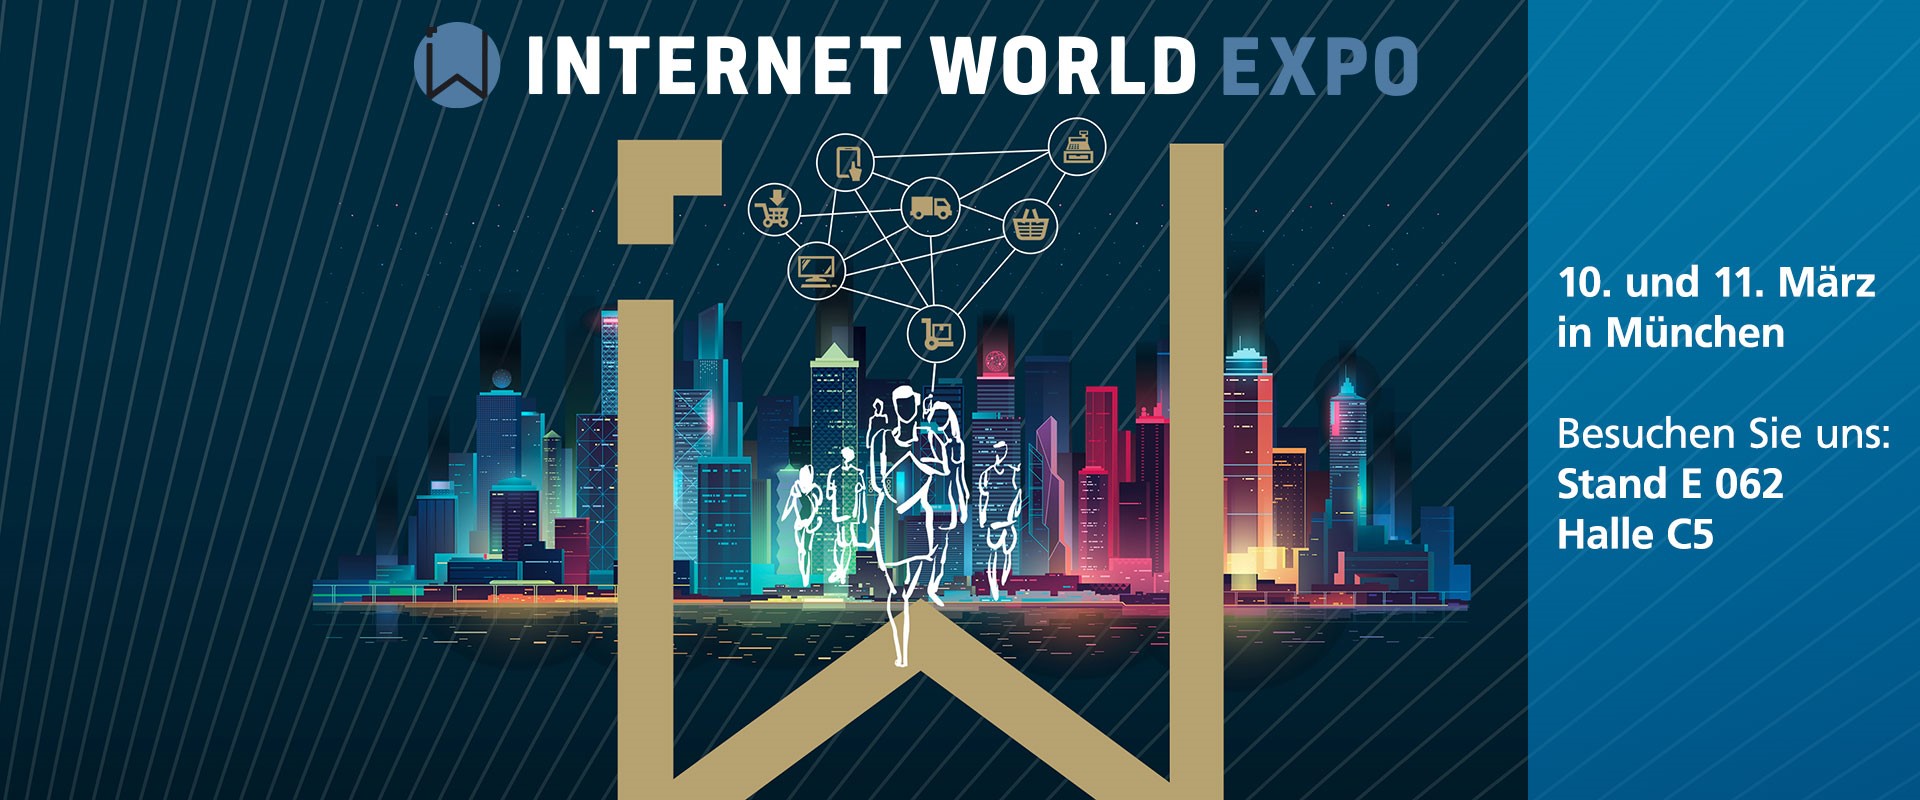 Descartes Internet World Expo